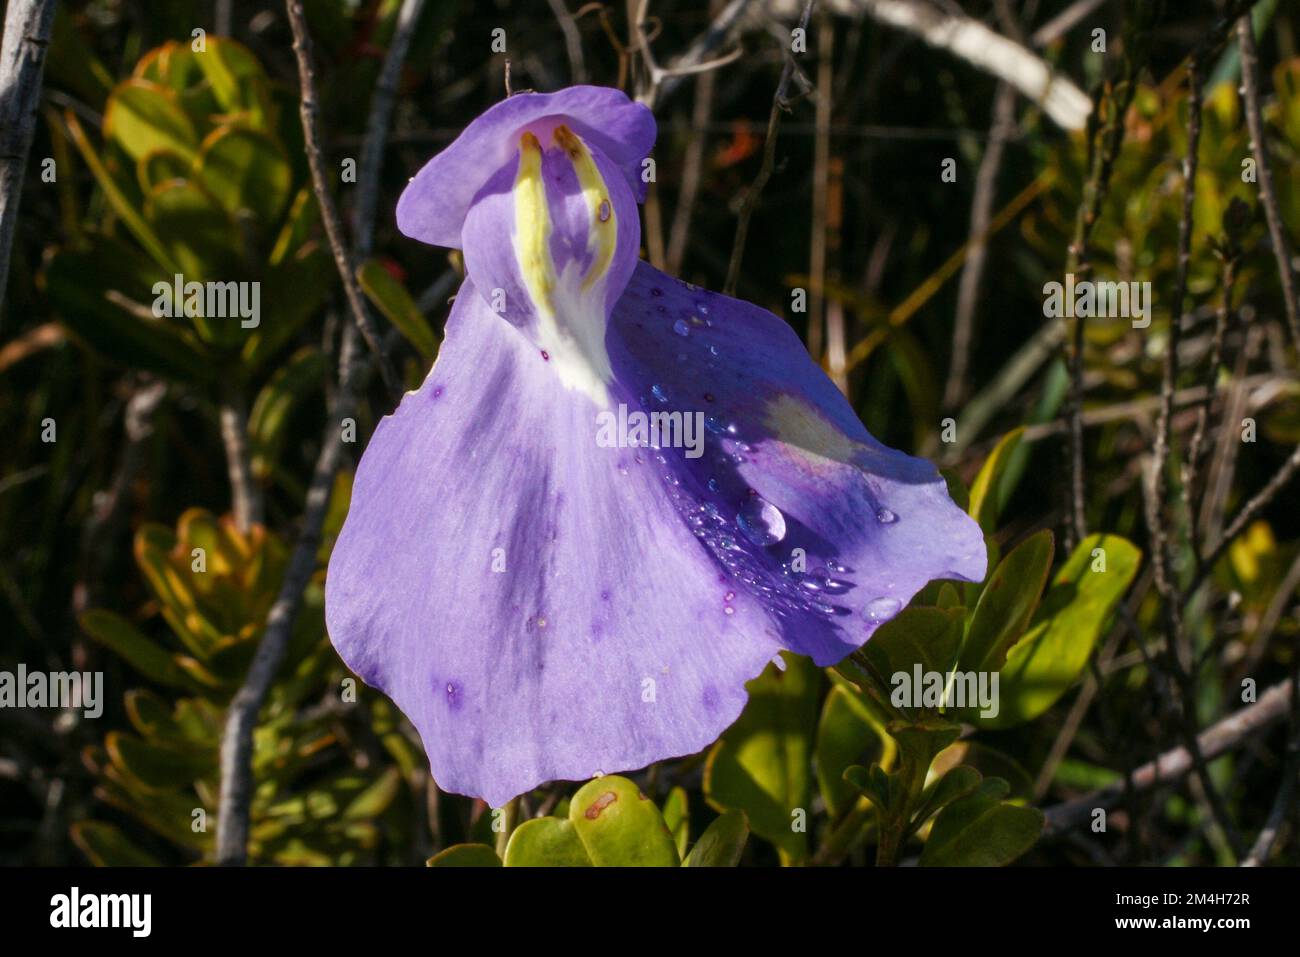 Flower of Utricularia humboldtii, Humboldts bladderwort, on Amuri Tepui, Venezuela Stock Photo